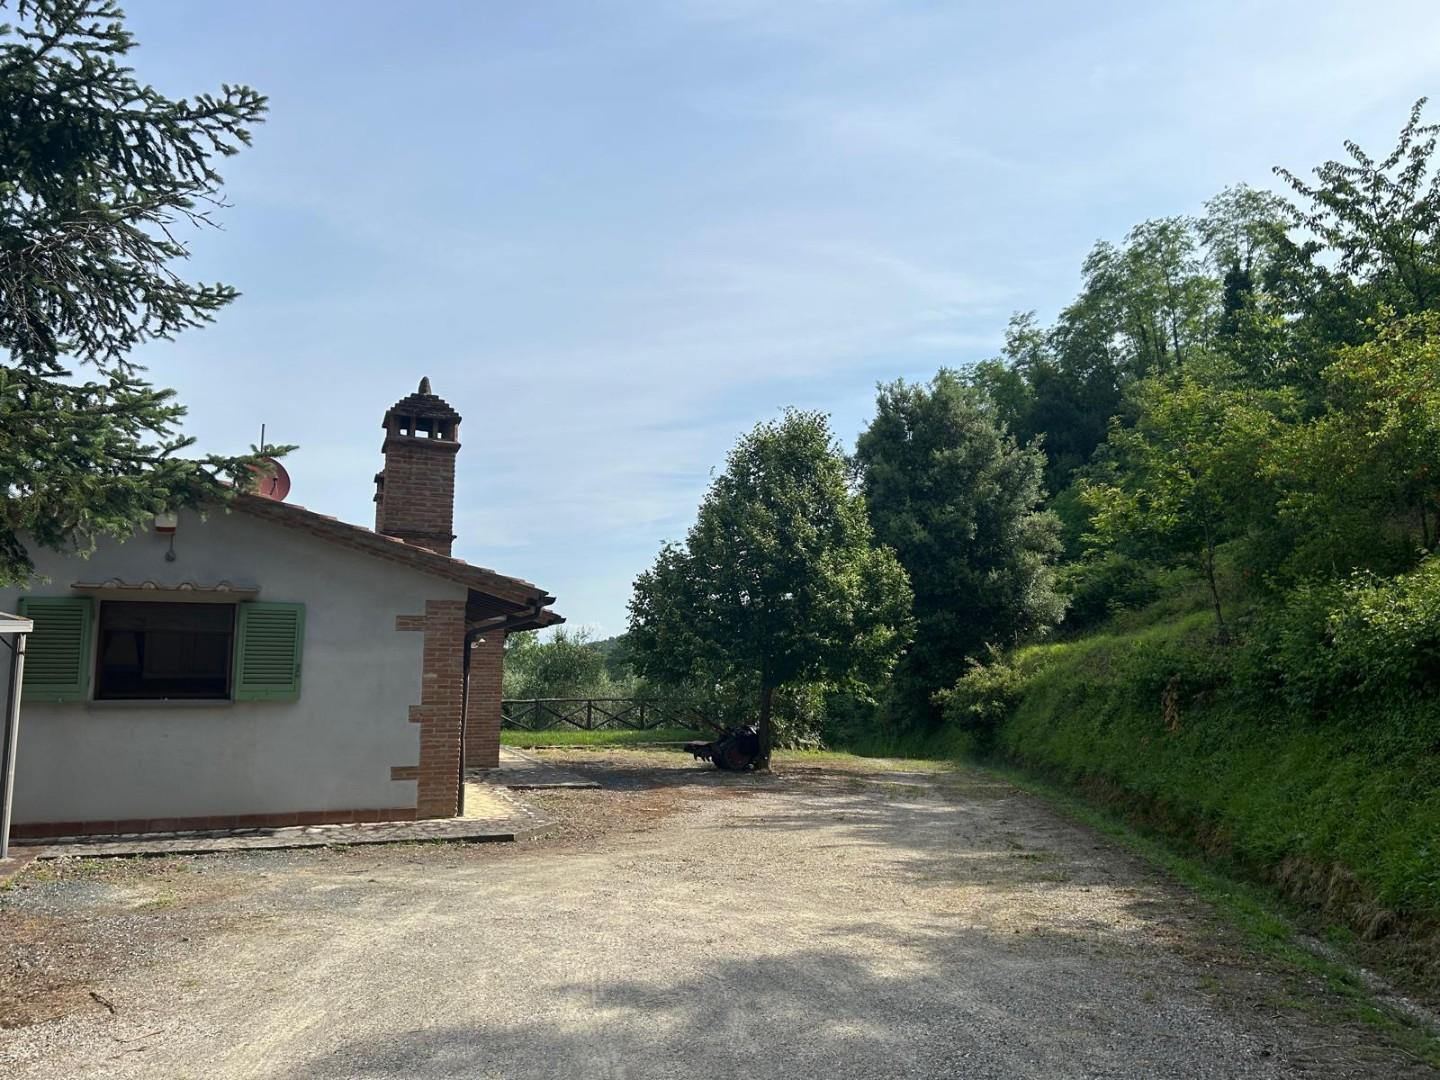 Casa indipendente in vendita a Montopoli in Val d'Arno